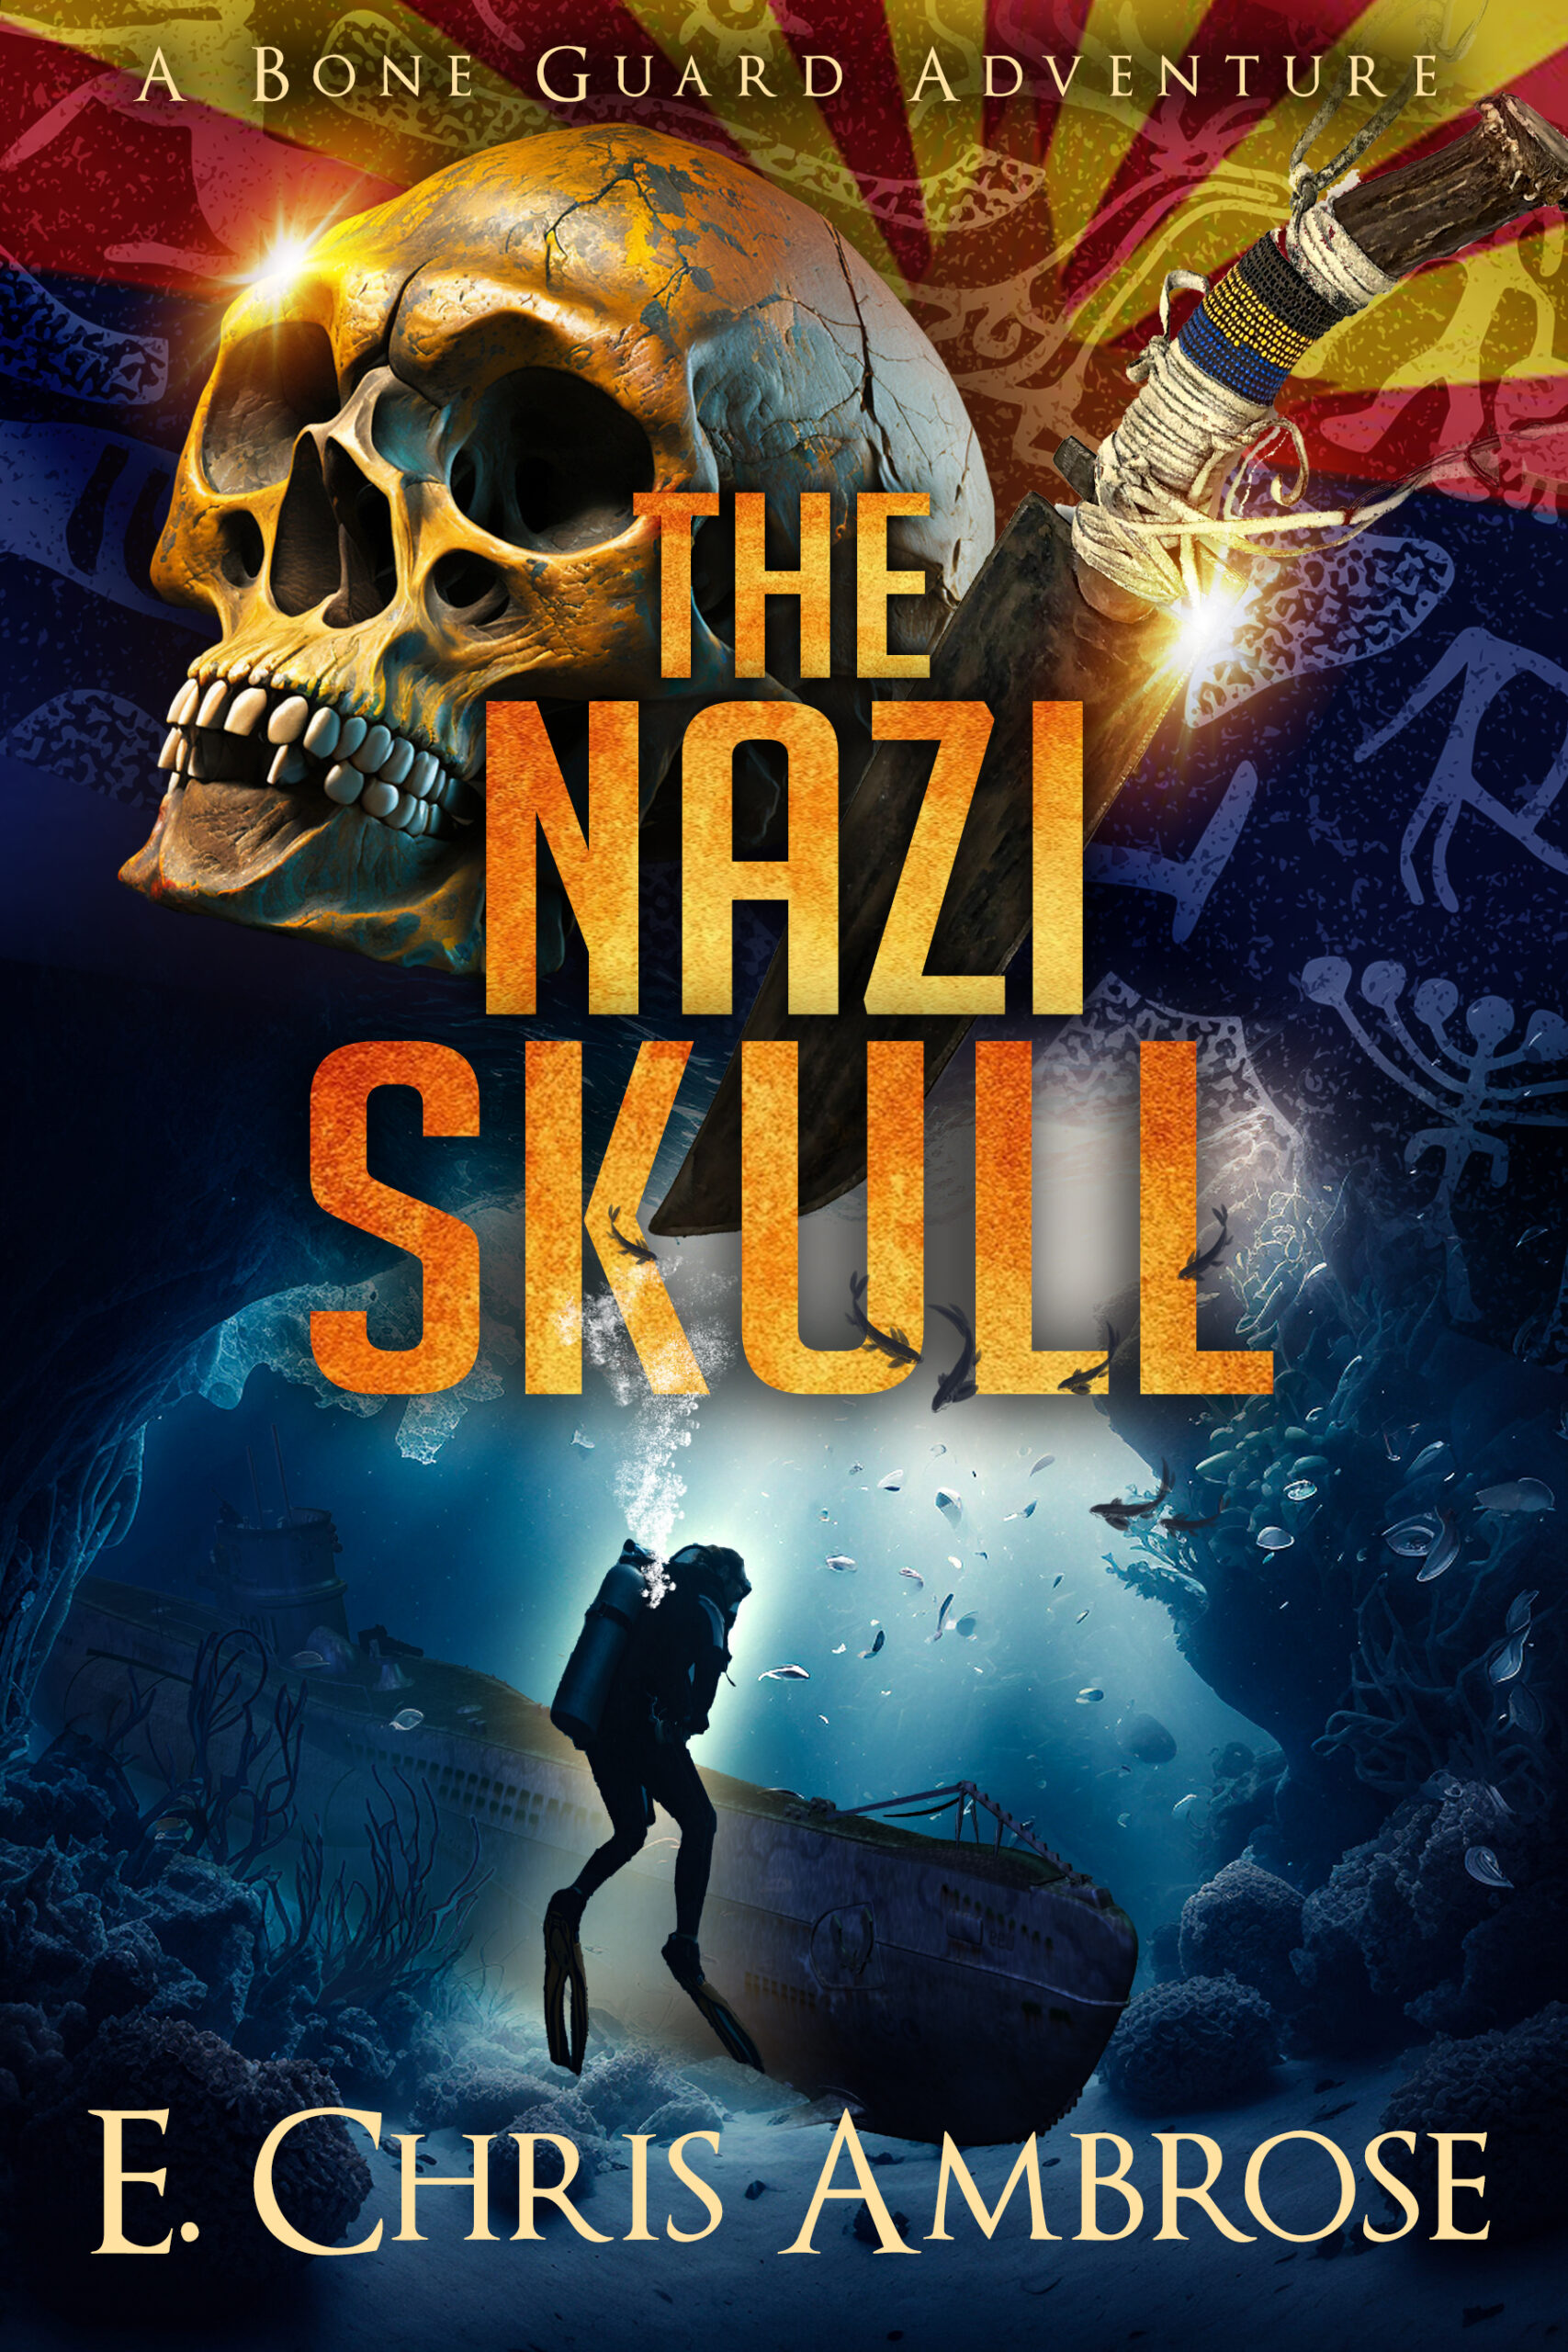 C The Nazi Skull 2